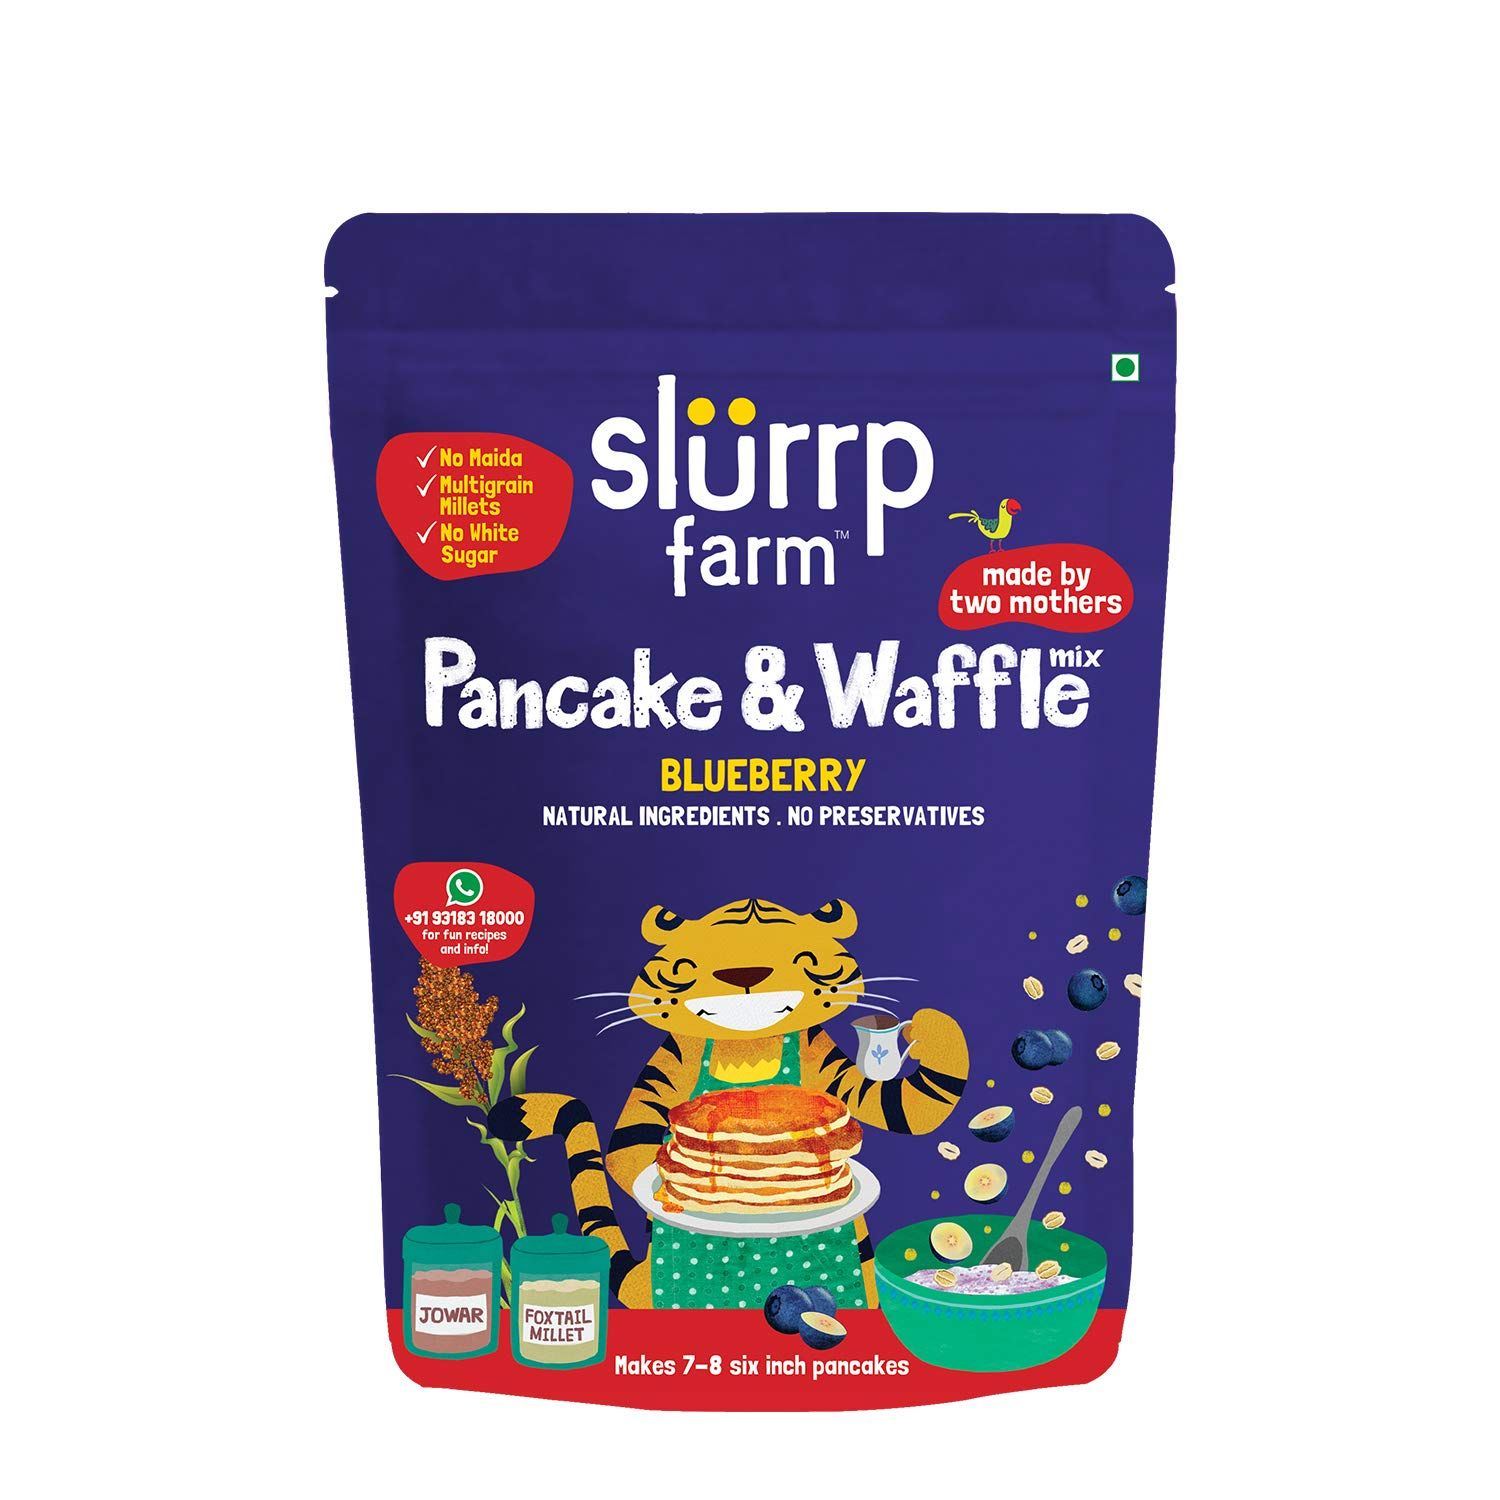 Slurrp Farm Pancake & Waffle Blueberry Image